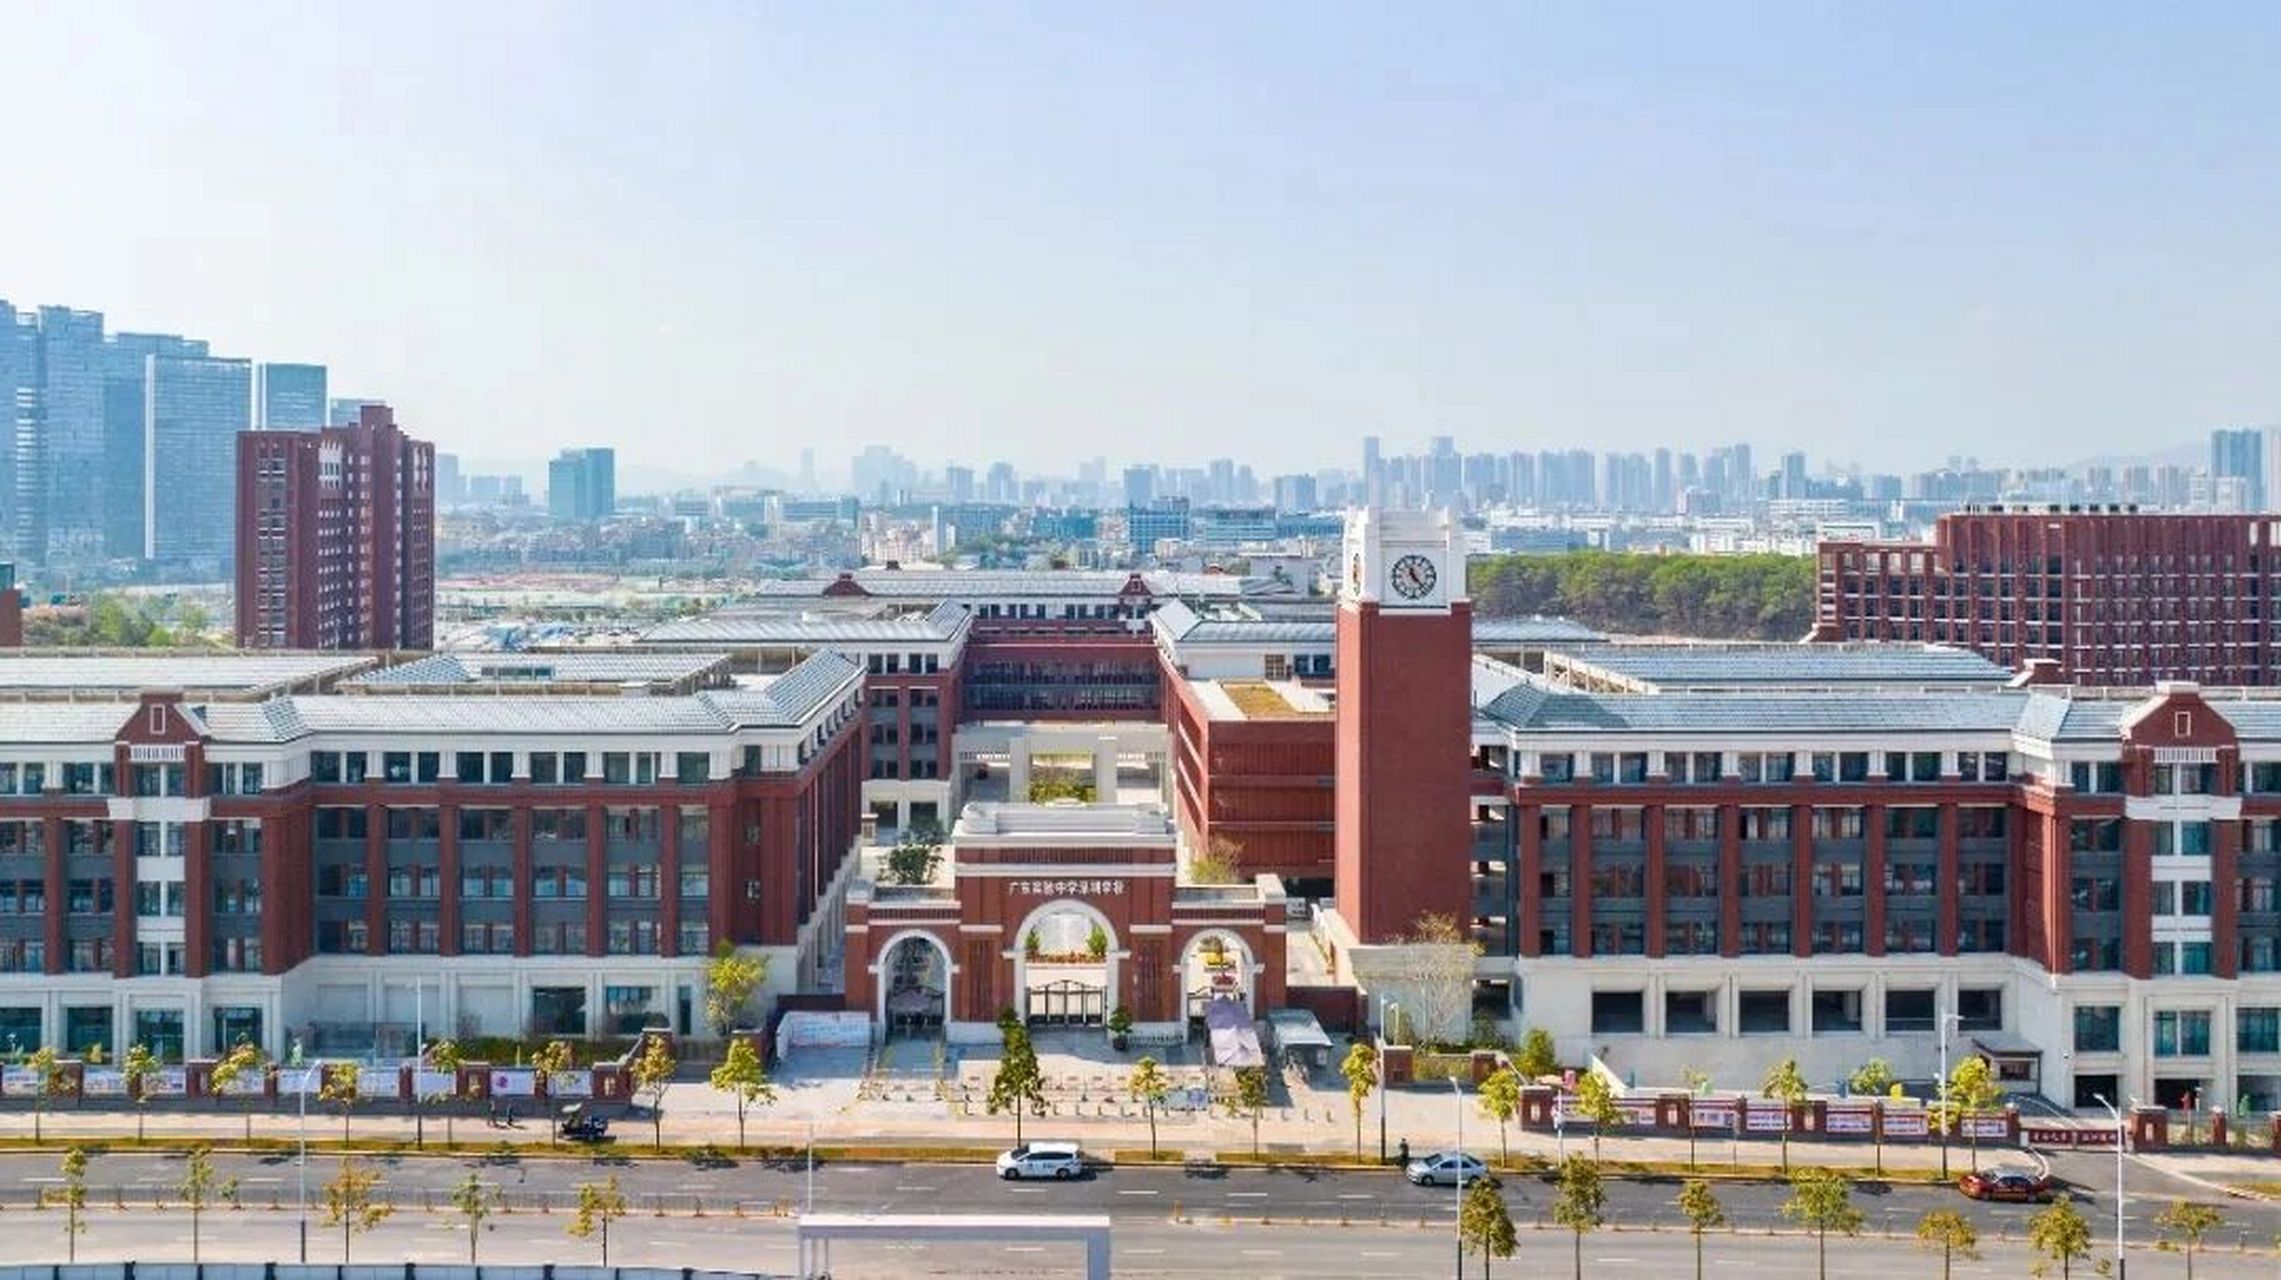 广东省实验中学新校区图片